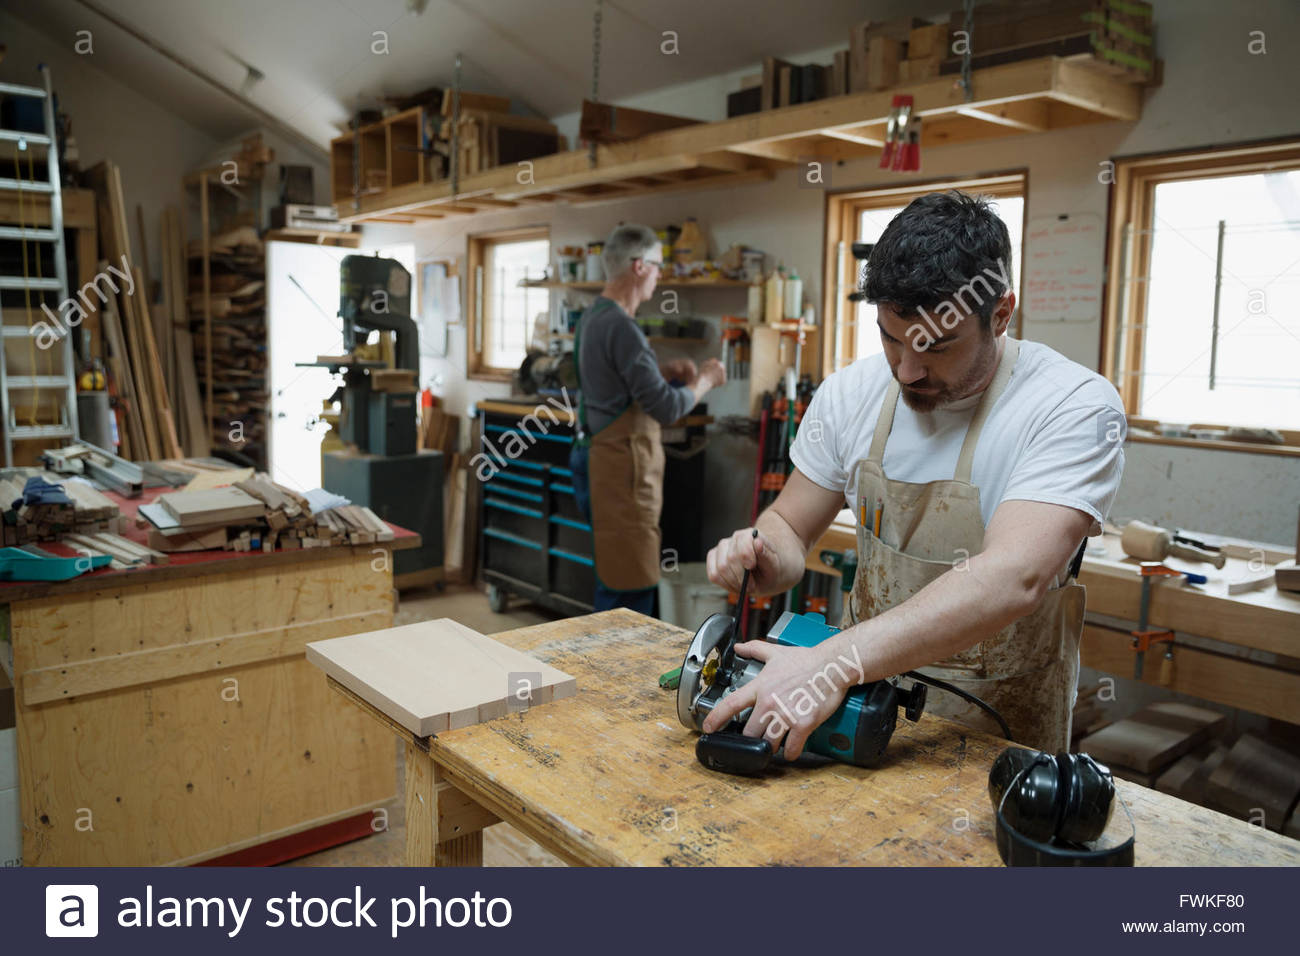 Carpenter adjusting hand saw in workshop Stock Photo